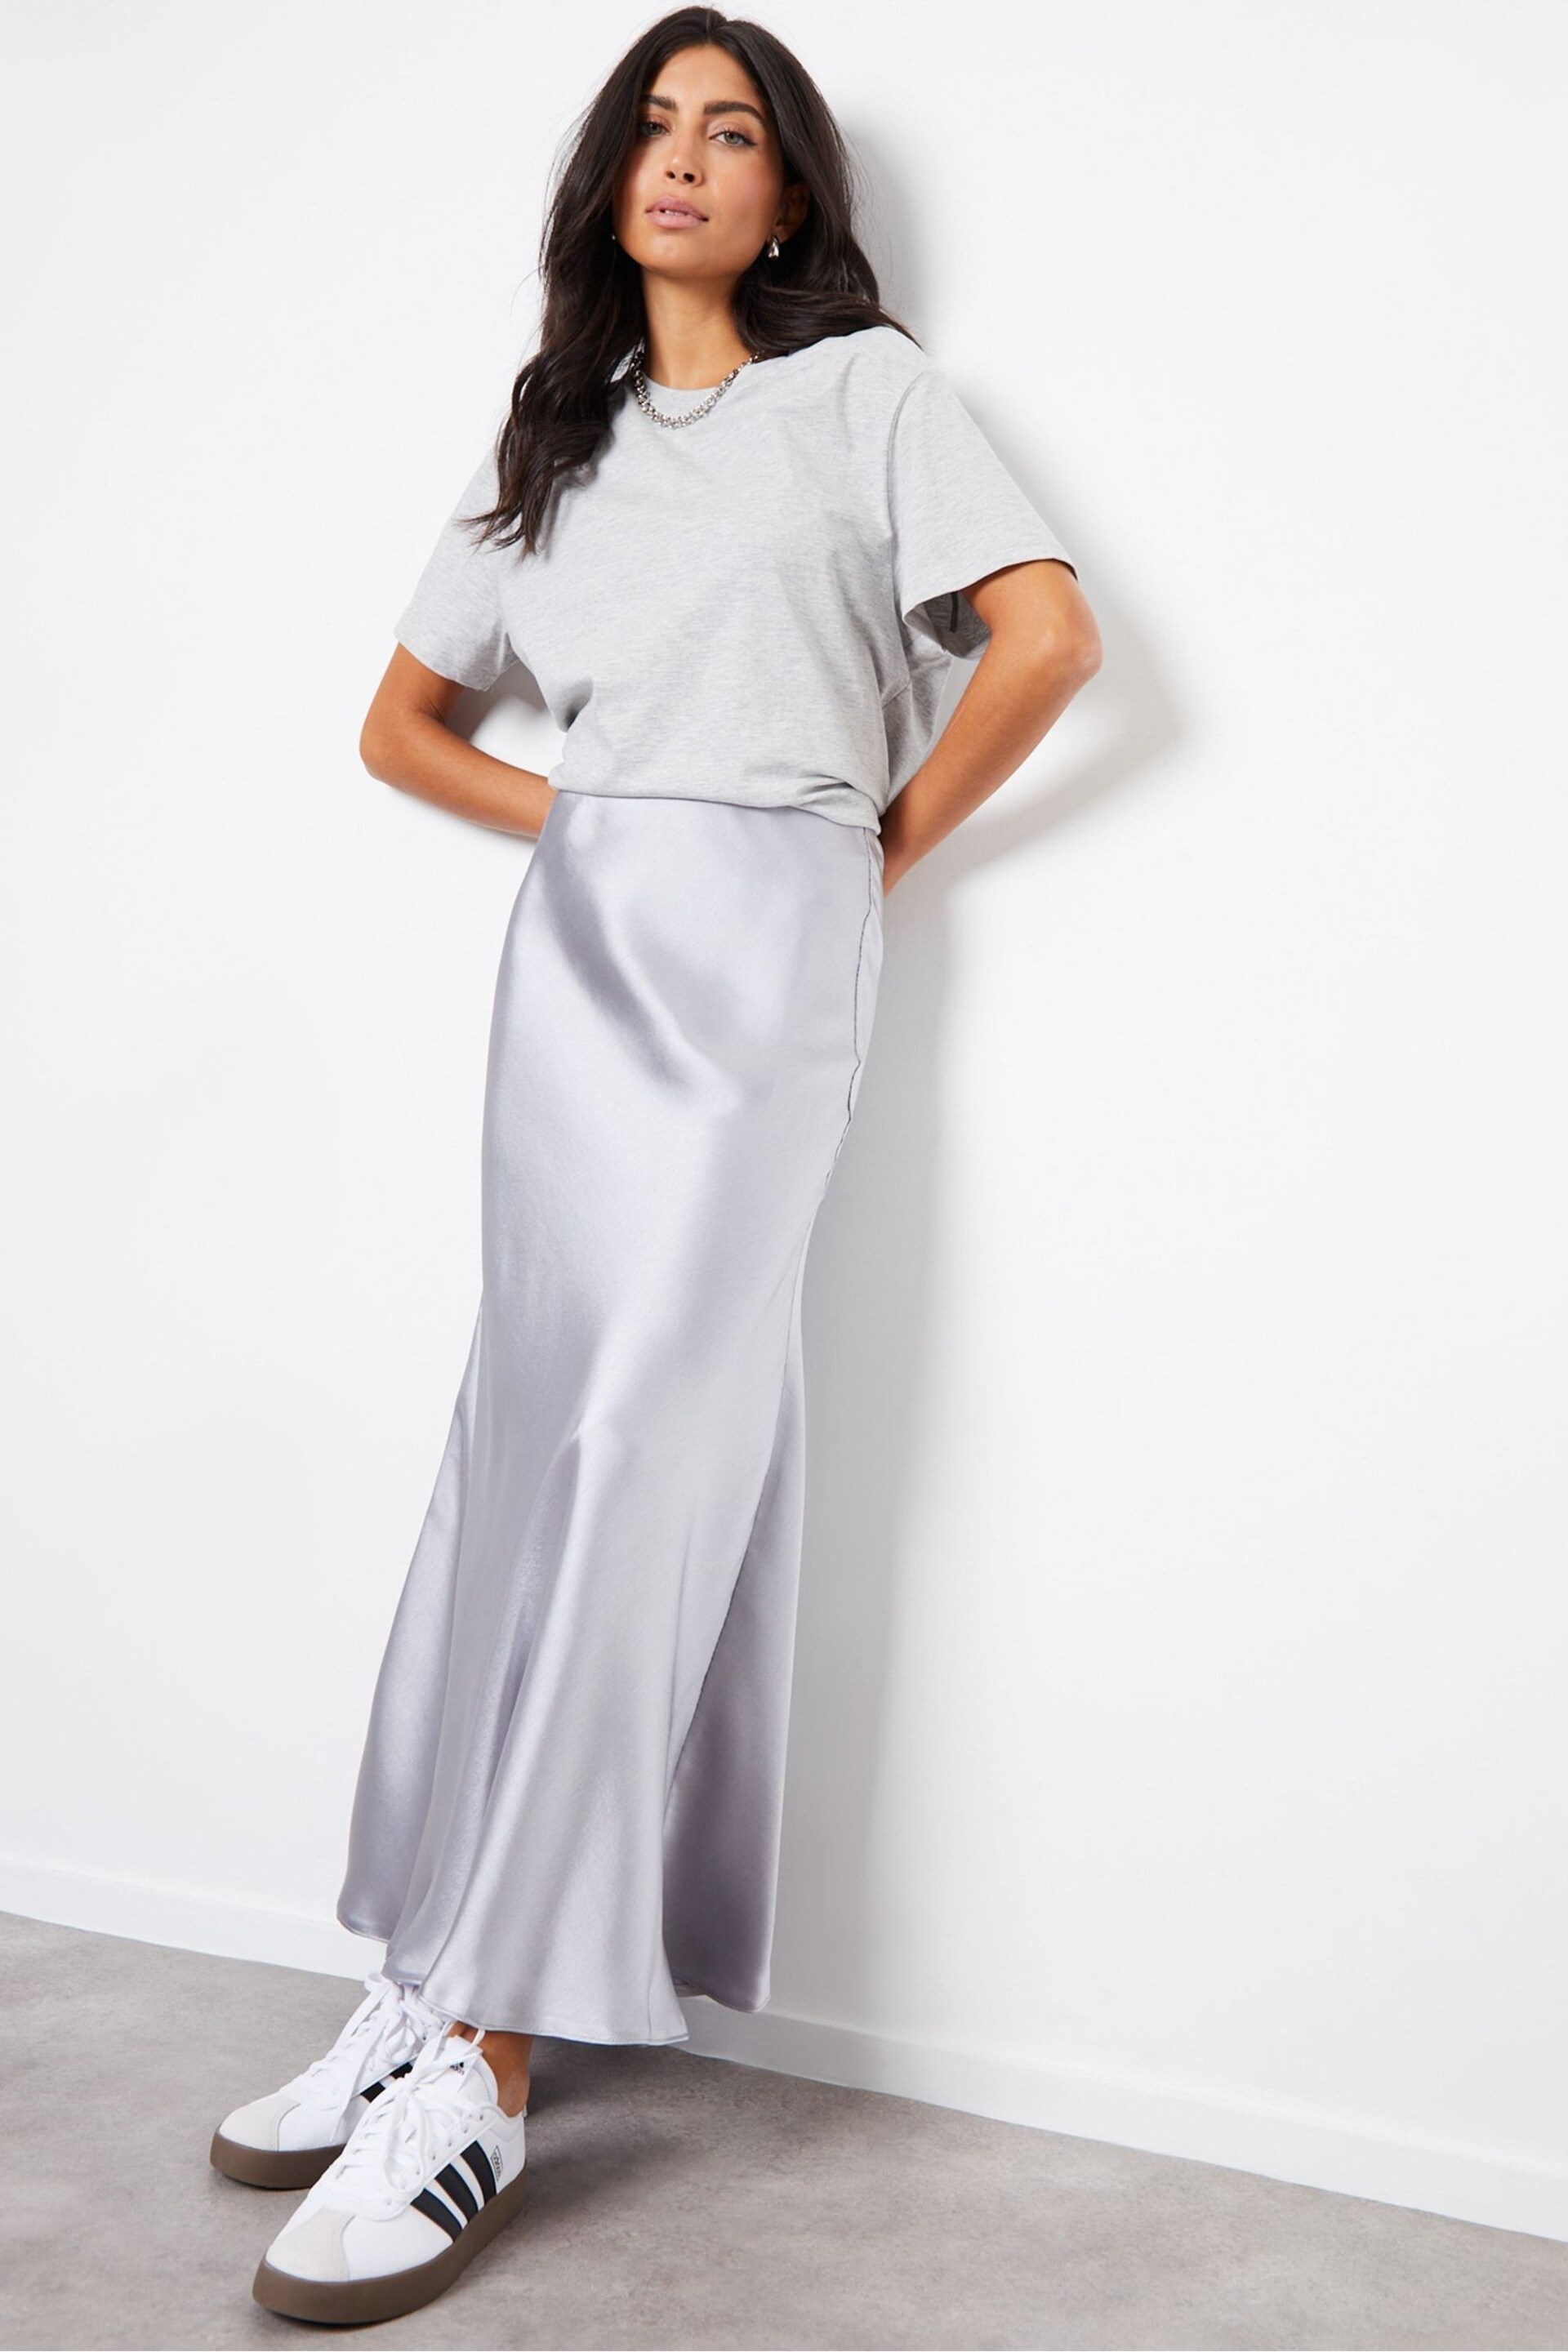 Threadbare Silver Satin Maxi Slip Skirt - Image 3 of 5